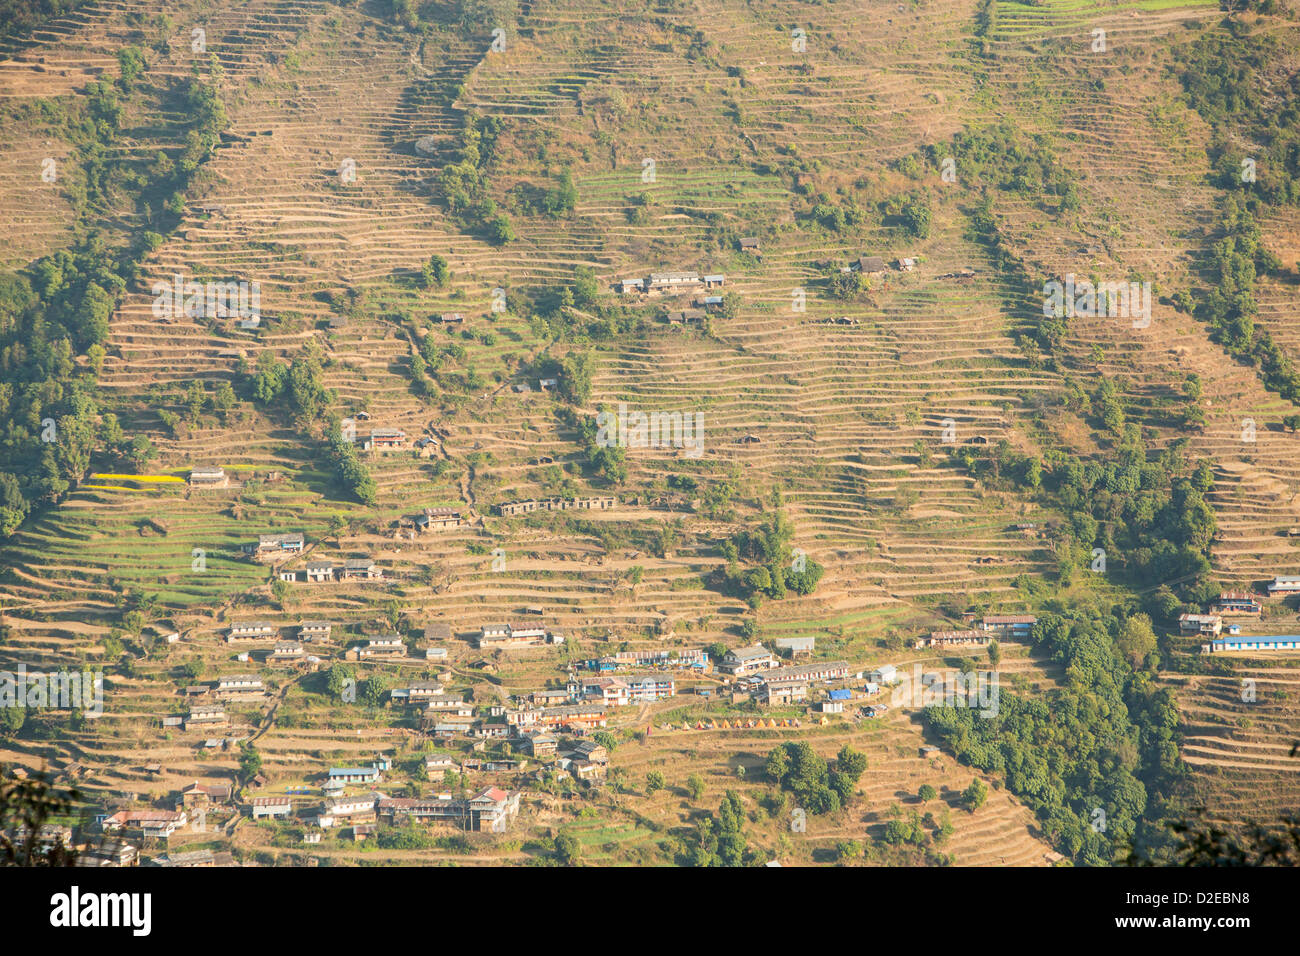 La agricultura de subsistencia en el Annapurna Himalaya en Nepal. El abancalamiento se ha desarrollado a lo largo de los siglos para cultivar esta tierra empinada de la montaña, mirando hacia la aldea de Landruk. Foto de stock